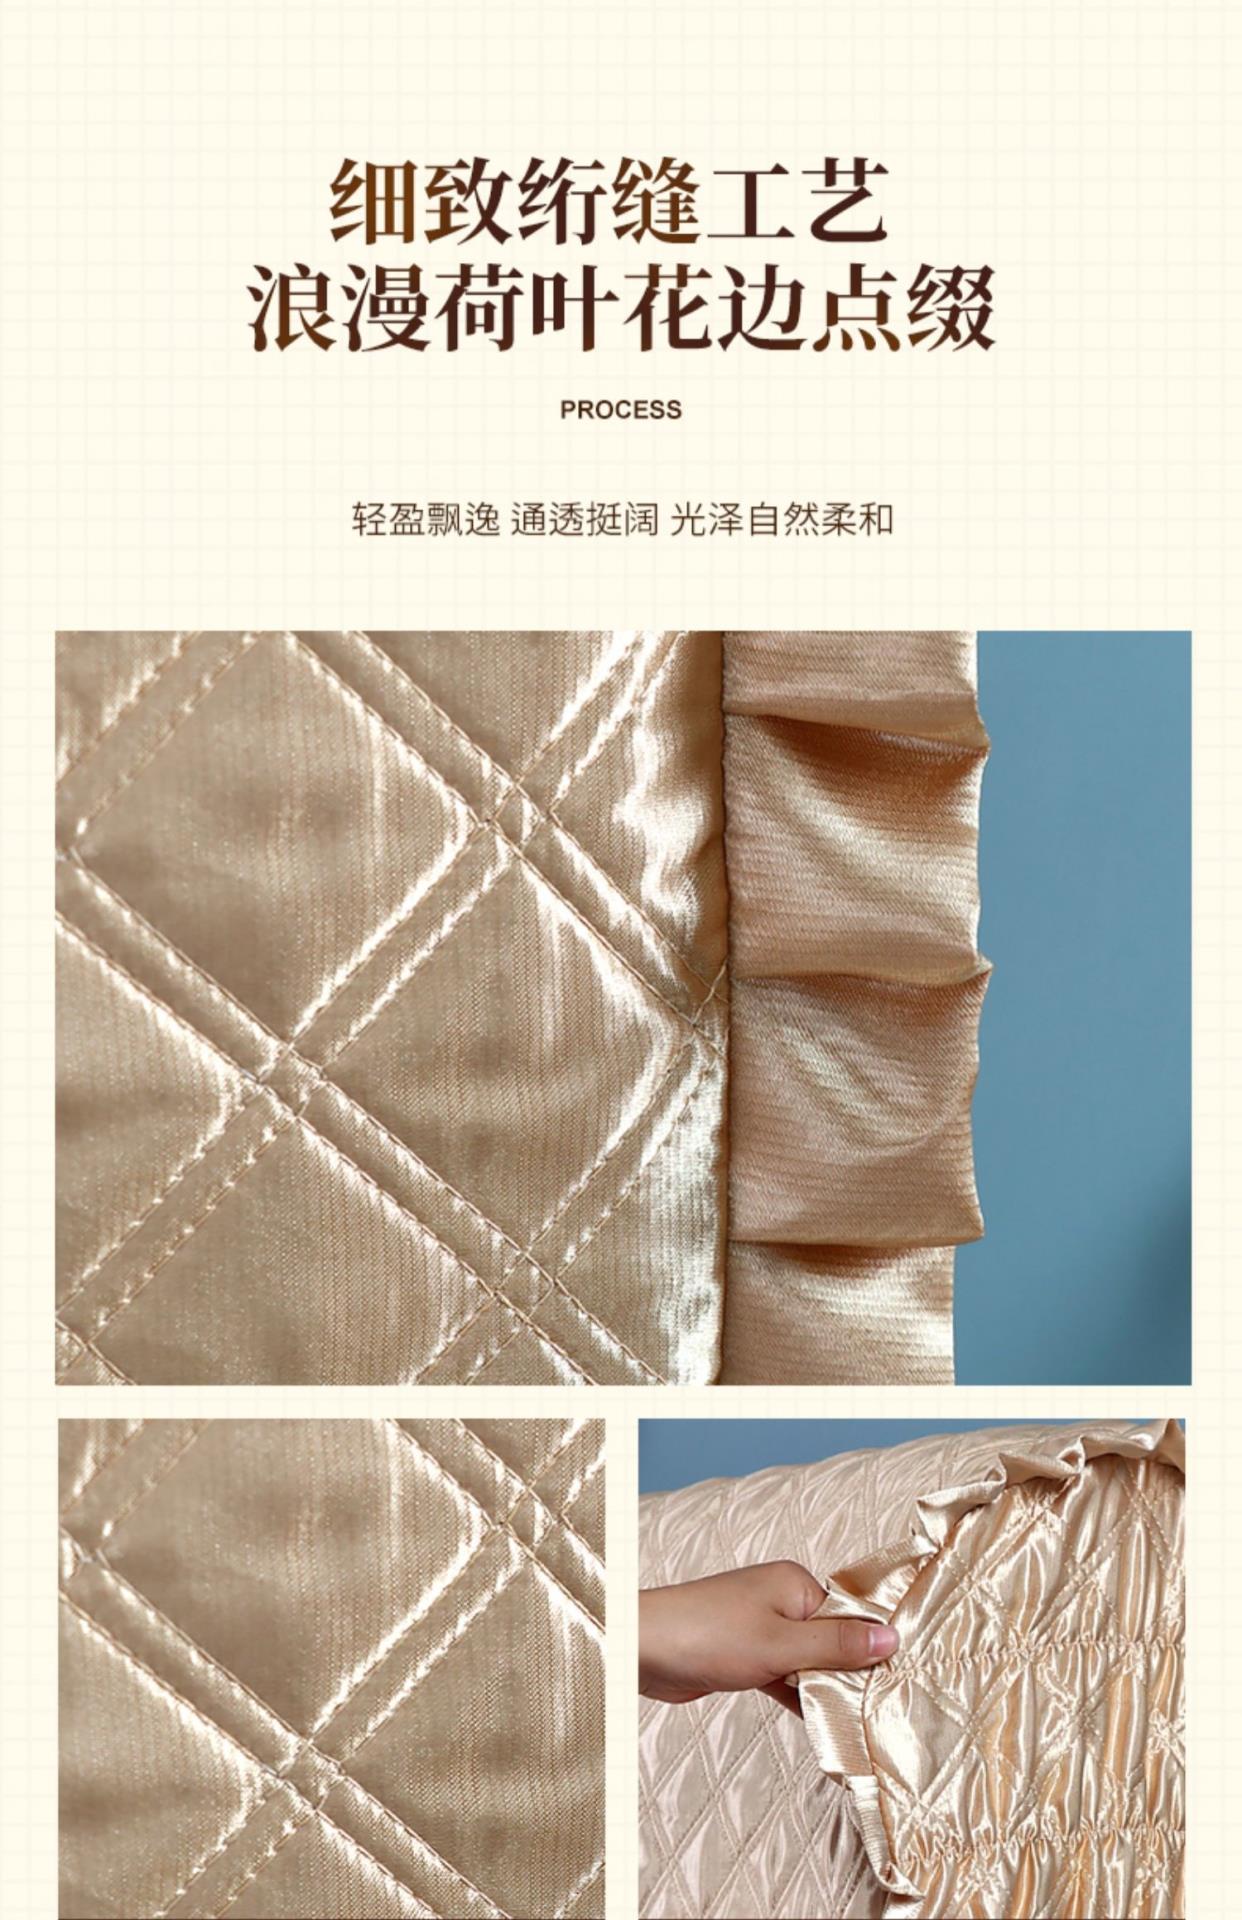 Ga trải giường phong cách châu âu bọc vải đầy đủ ga trải giường 1,8m đơn giản hiện đại mềm mại nắp lưng che chắn bụi - Bảo vệ bụi